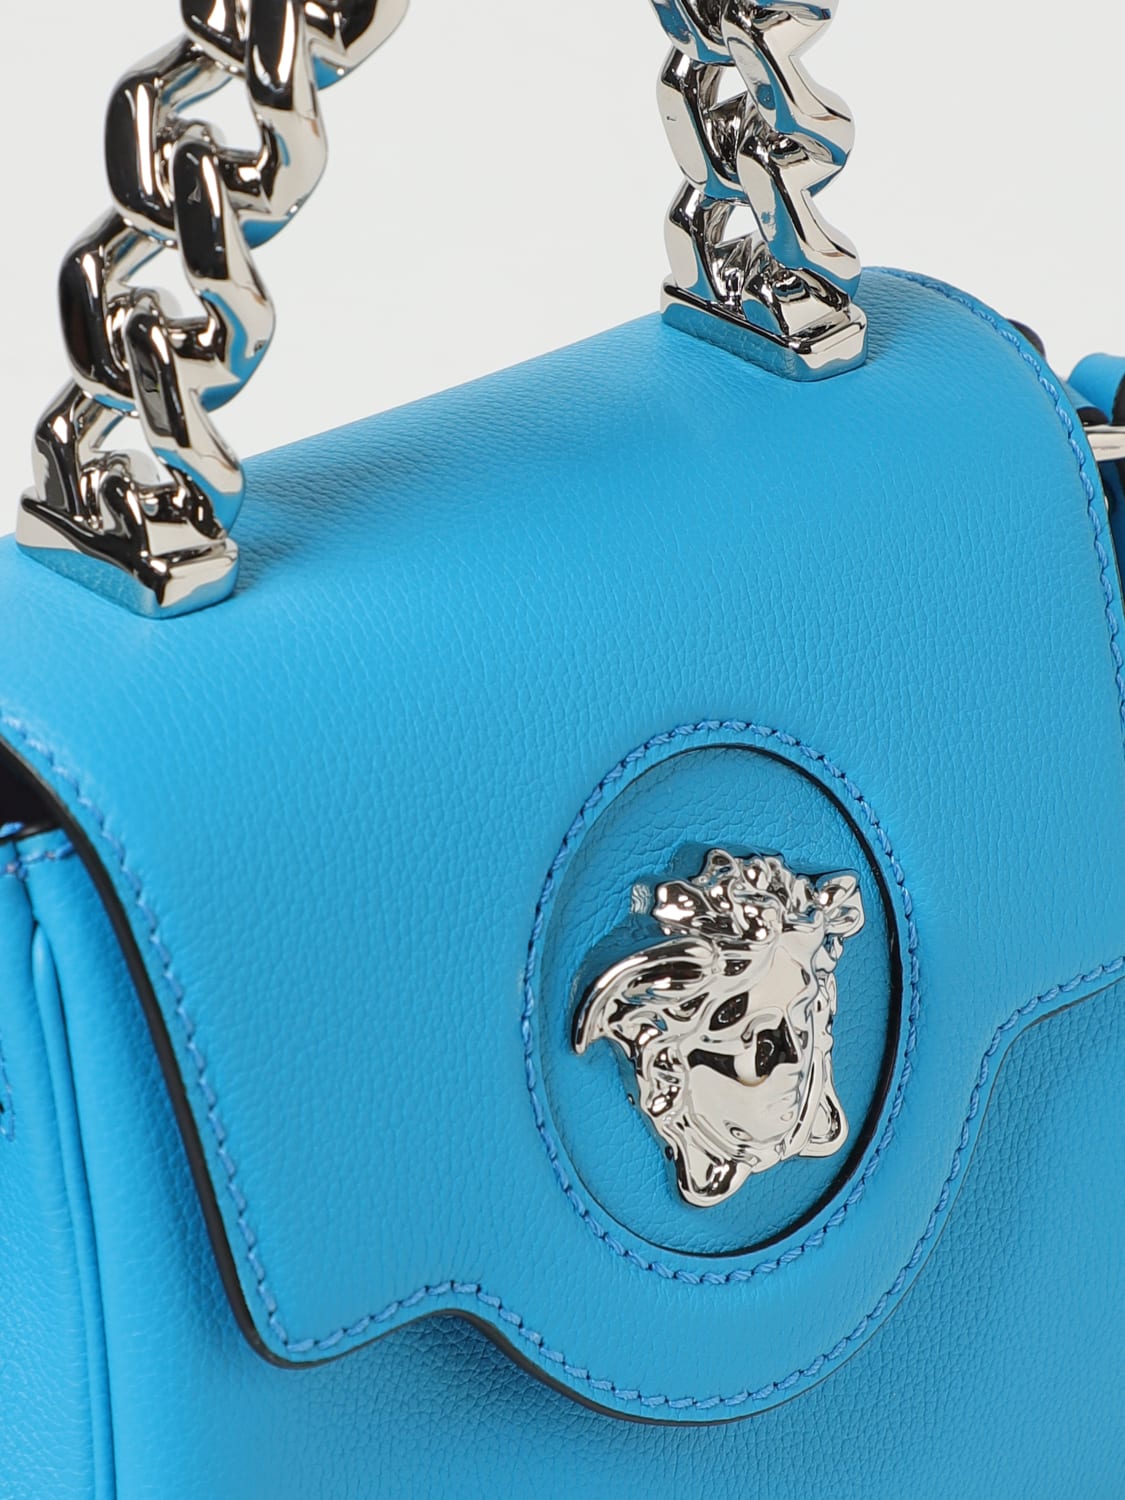 VERSACE: La Medusa bag in grained leather with shoulder strap - Blue